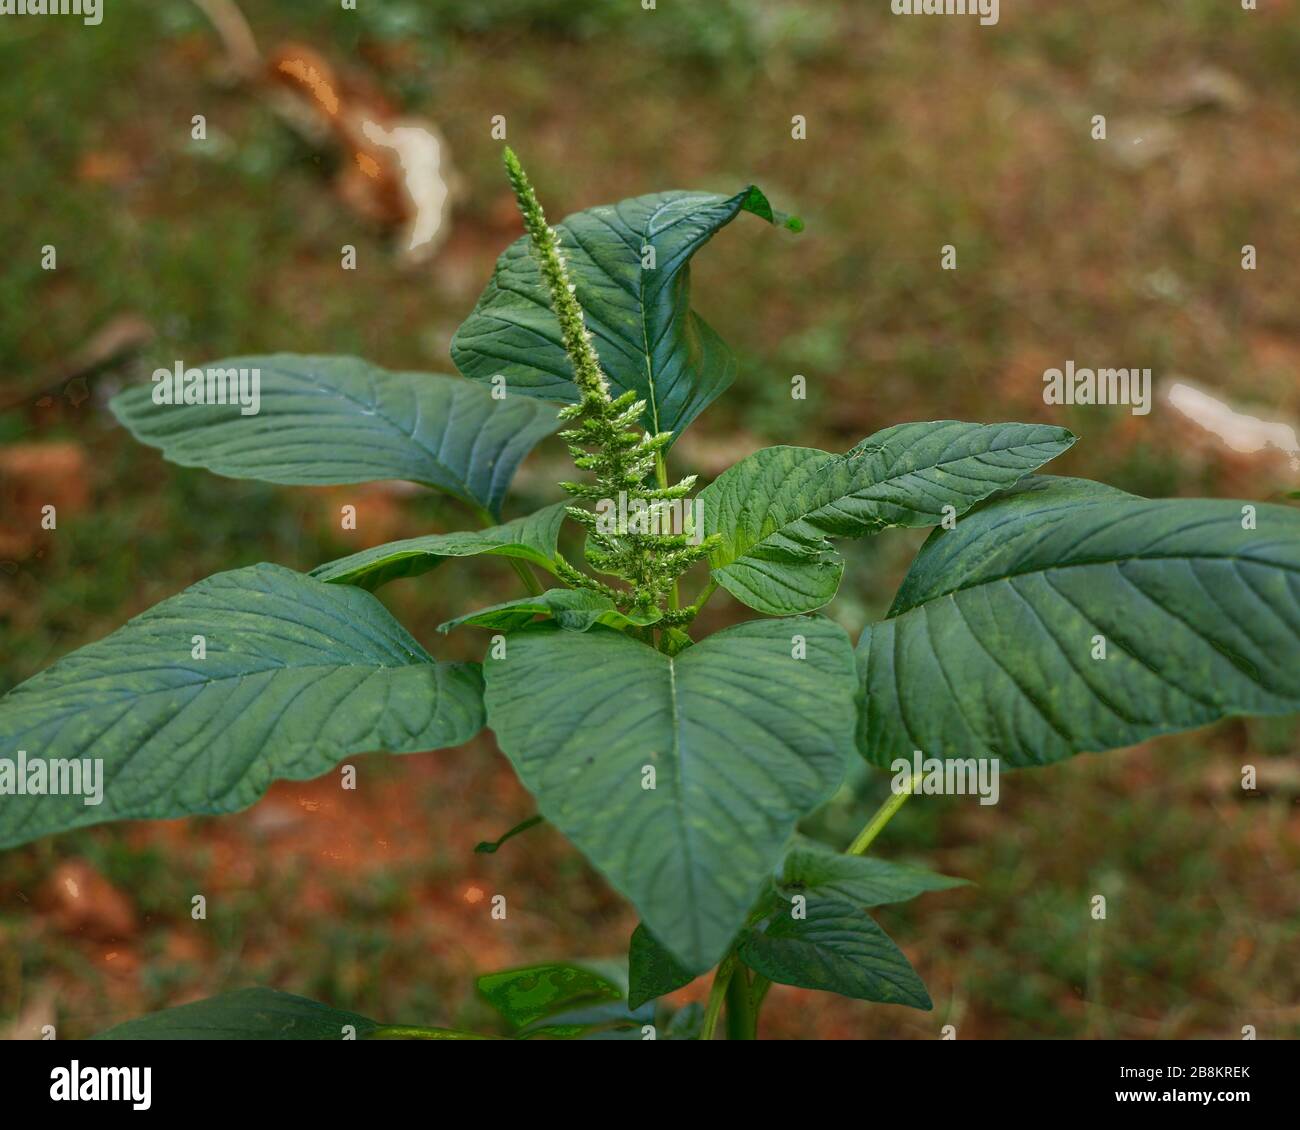 Vista de cerca de un amaranto verde (Amaranthus viridis), un vegetal de hoja saludable popular en el sur de la India. Foto de stock